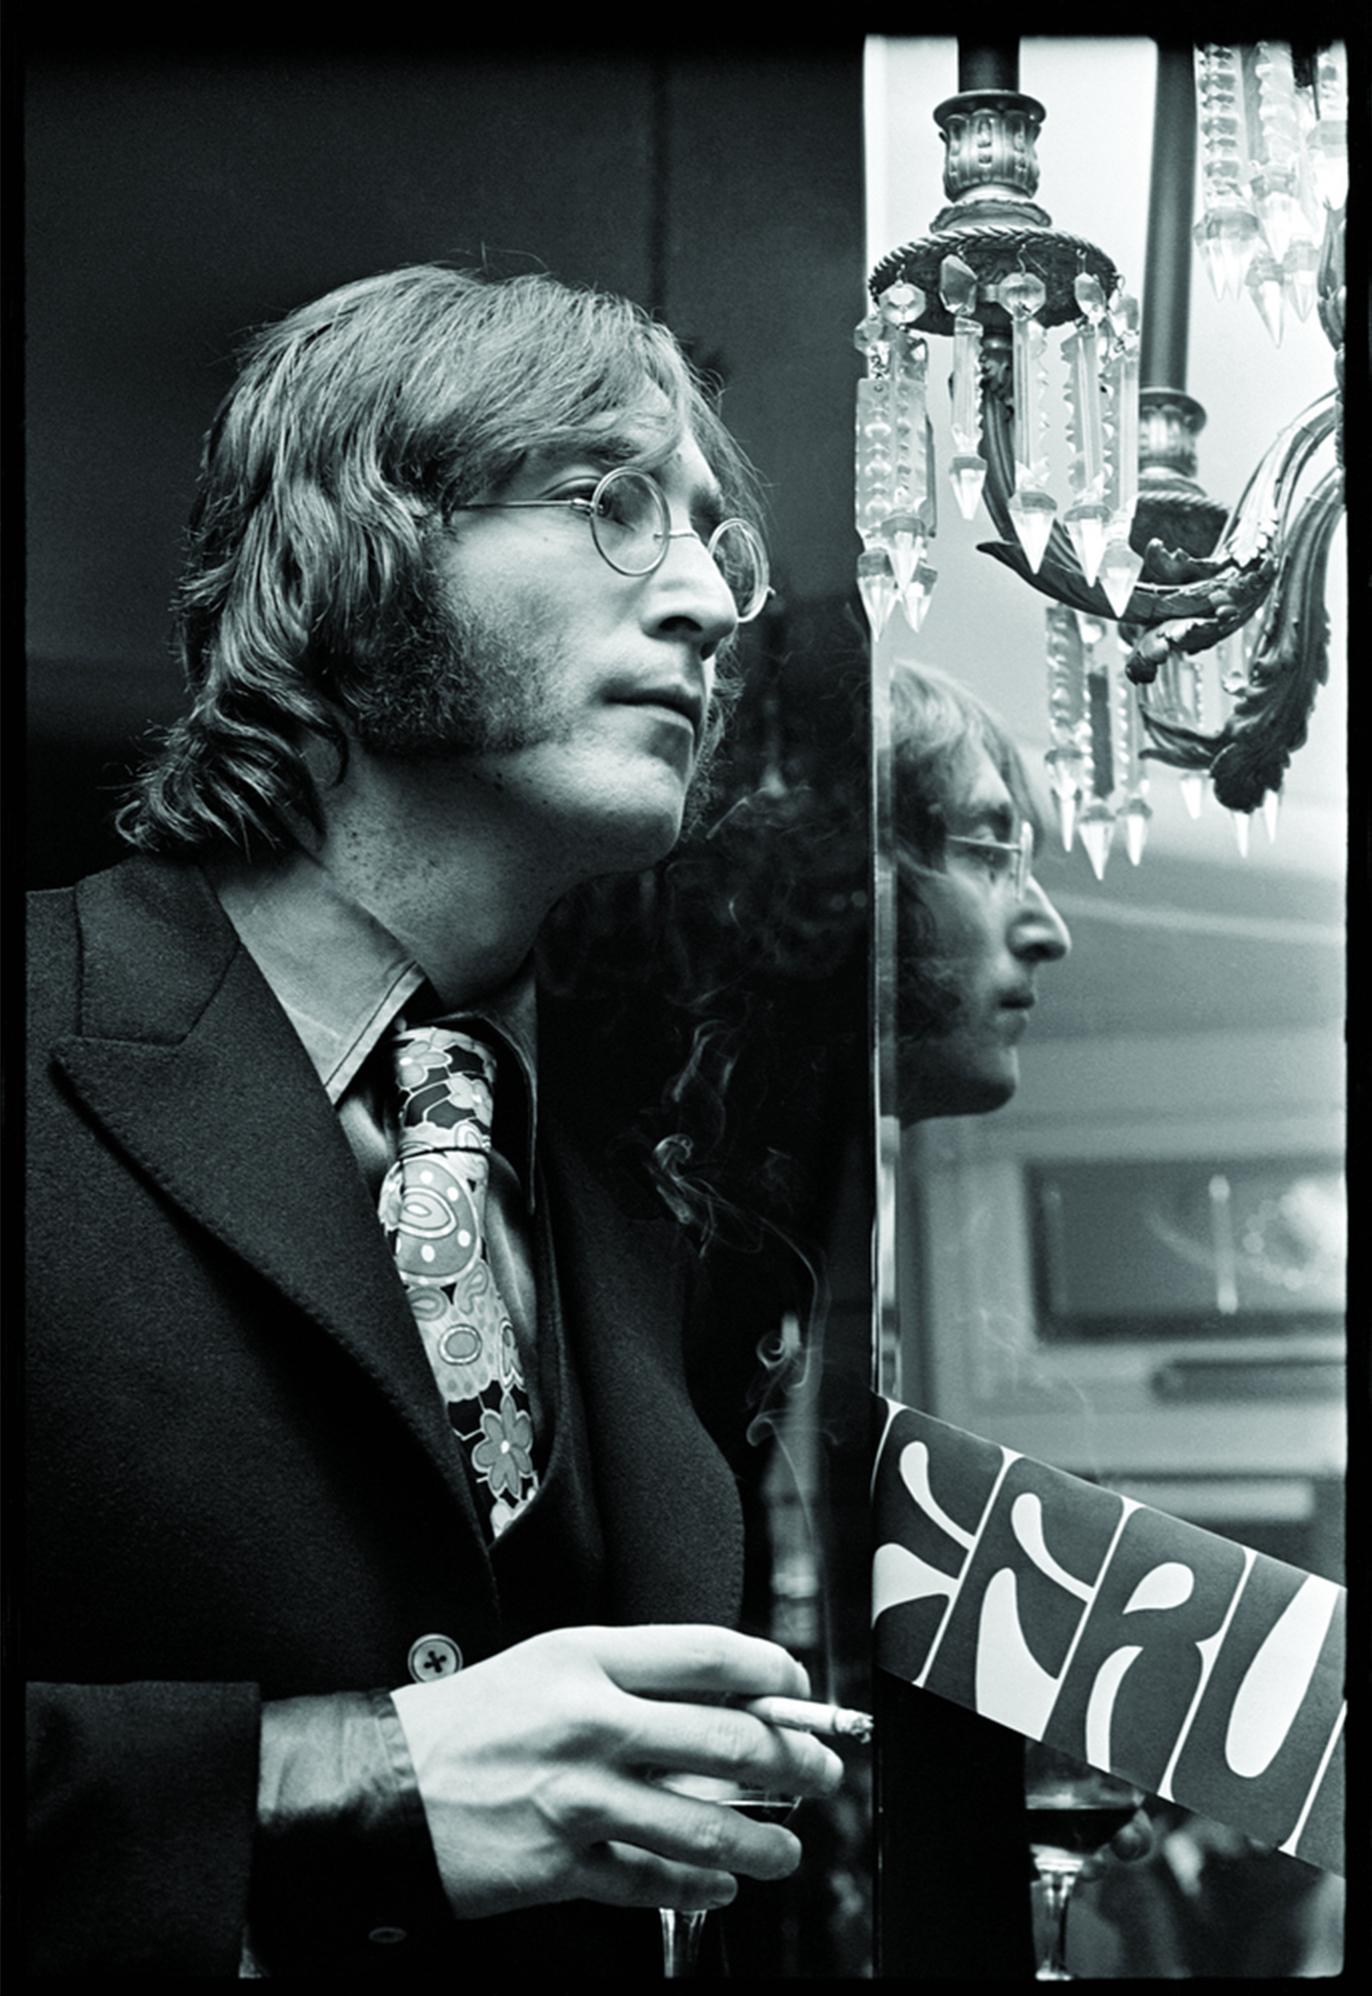 Alec Byrne Portrait Photograph - John Lennon 1968 portrait